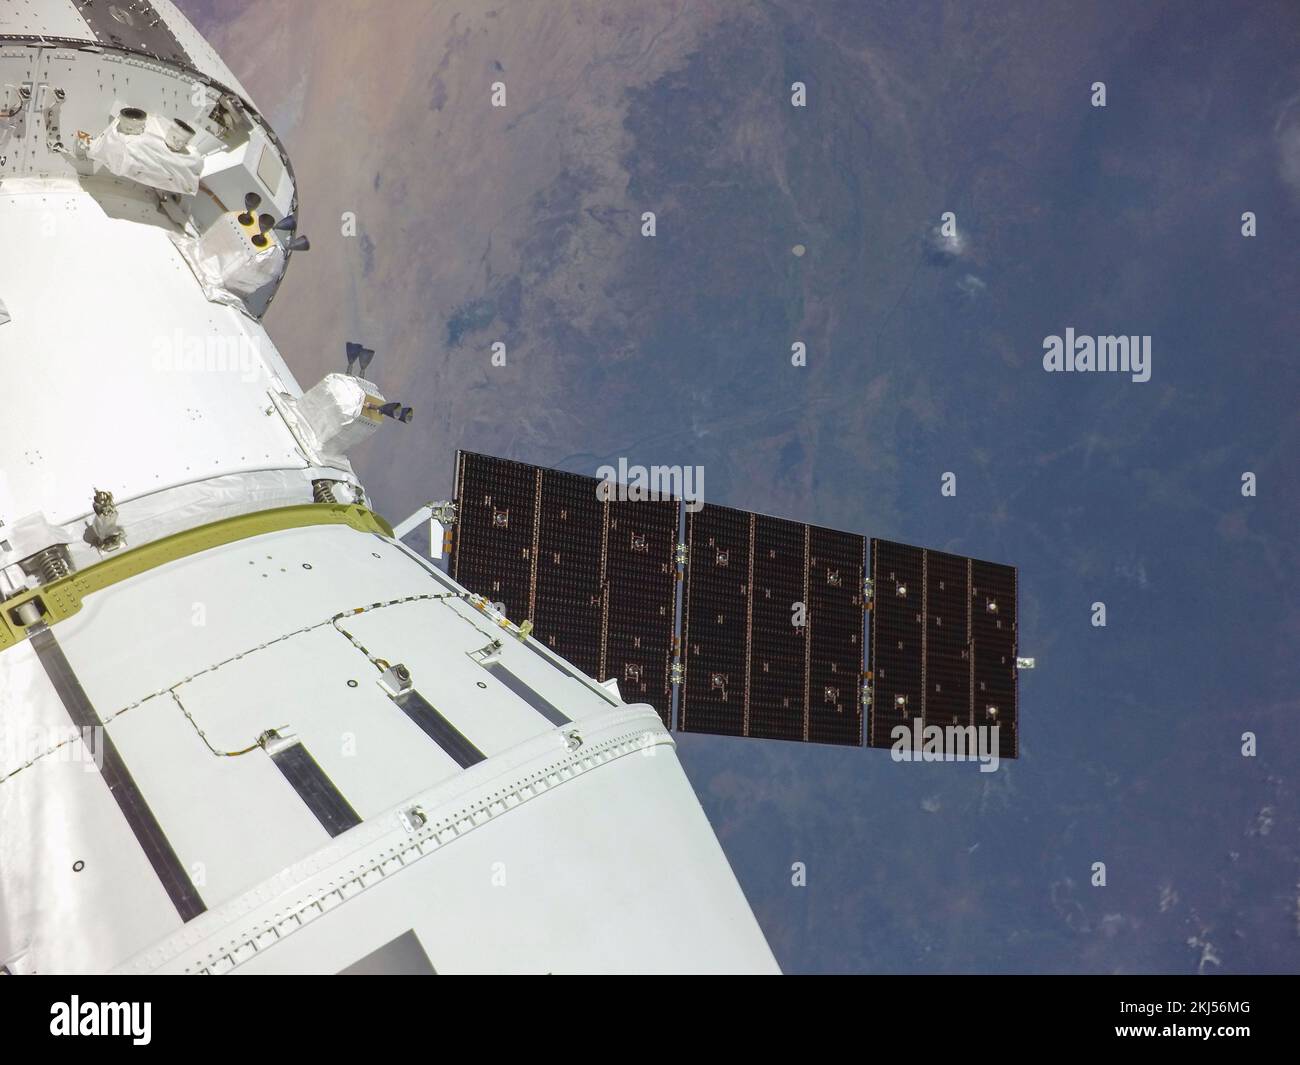 Orbite de la terre, orbite de la terre. 16 novembre 2022. Selfie de la capsule d'équipage Orion avec la Terre après avoir déployé l'un des panneaux solaires peu après le lancement le jour de vol de la mission Artemis I de la NASA, 16 novembre 2022, dans l'orbite de la Terre. L’image a été capturée par une caméra à la pointe de l’un des panneaux solaires lorsqu’elle s’est déplacée hors de l’atmosphère terrestre. Credit: NASA/NASA/Alamy Live News Banque D'Images